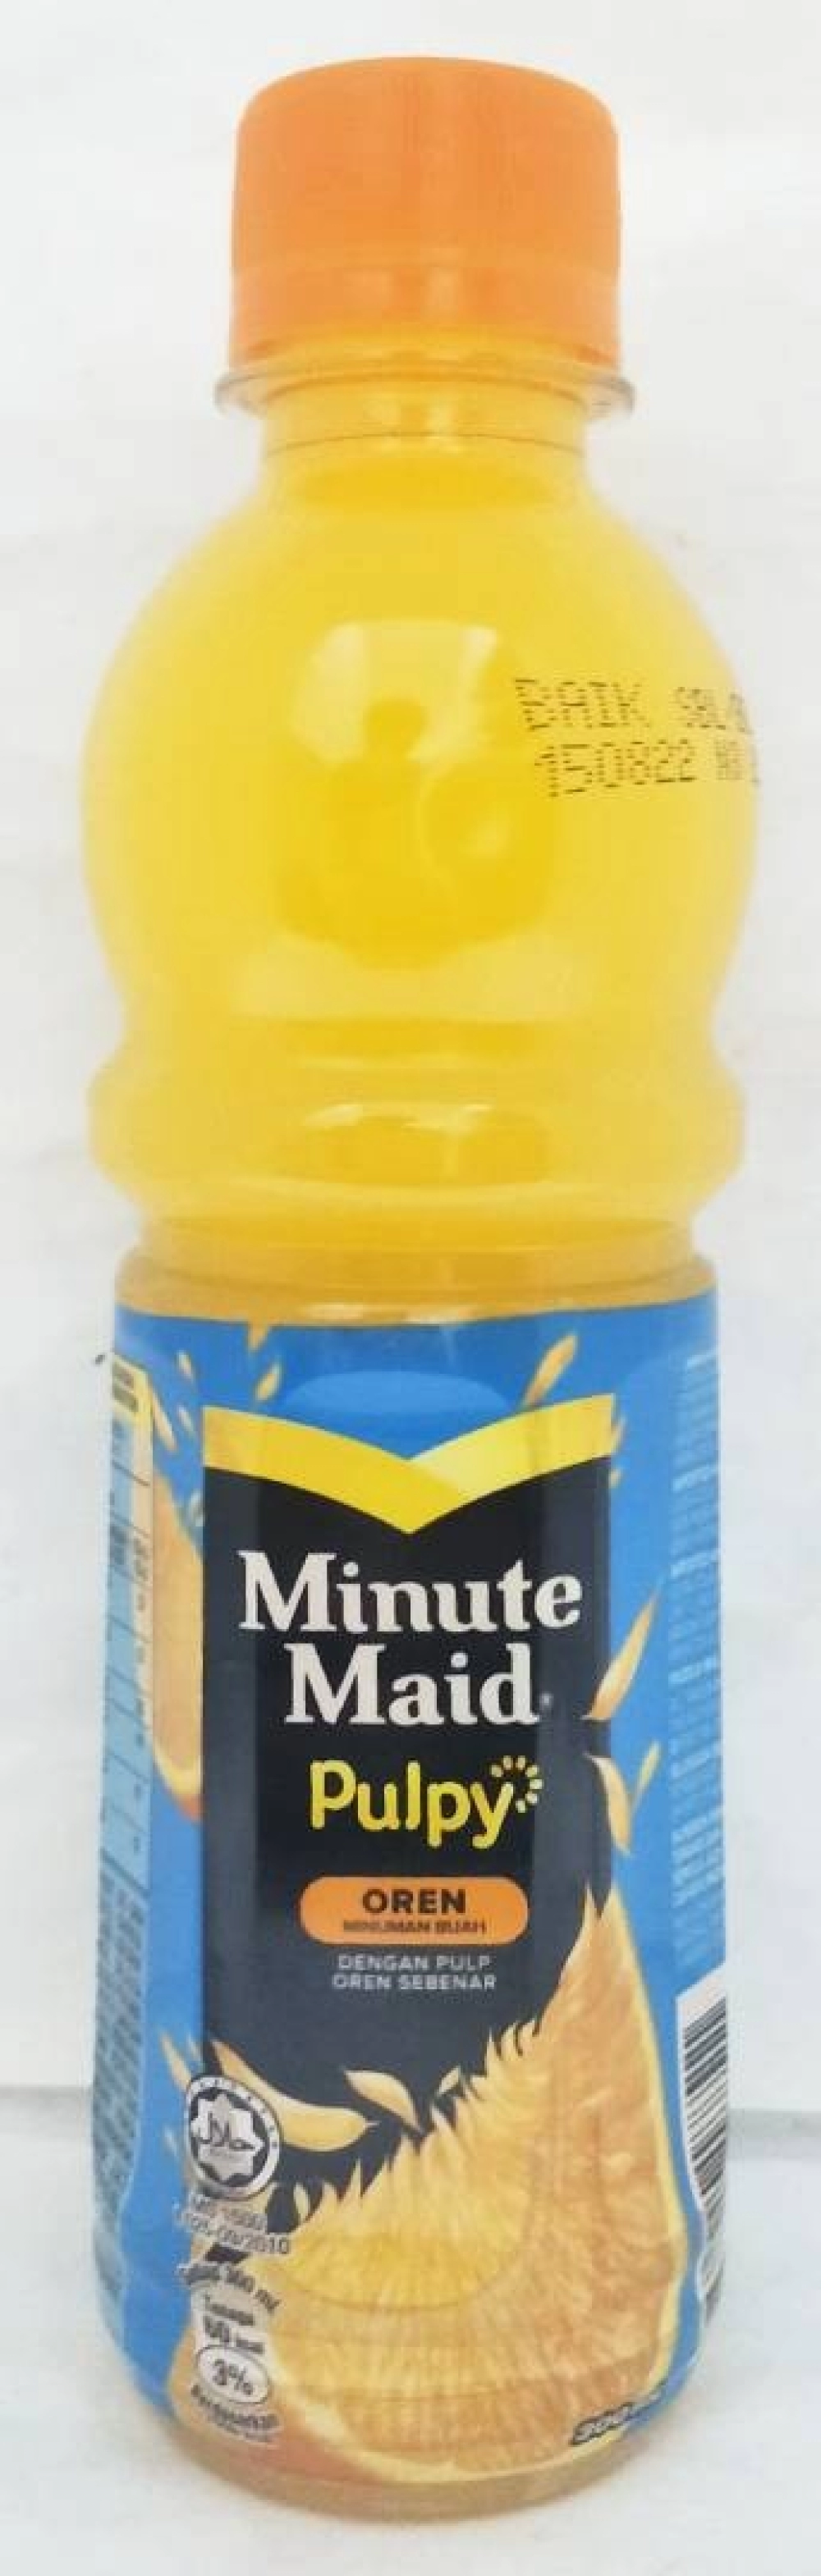 MINUTE MAID PULPY ORANGE JUICE 300ML 橙汁